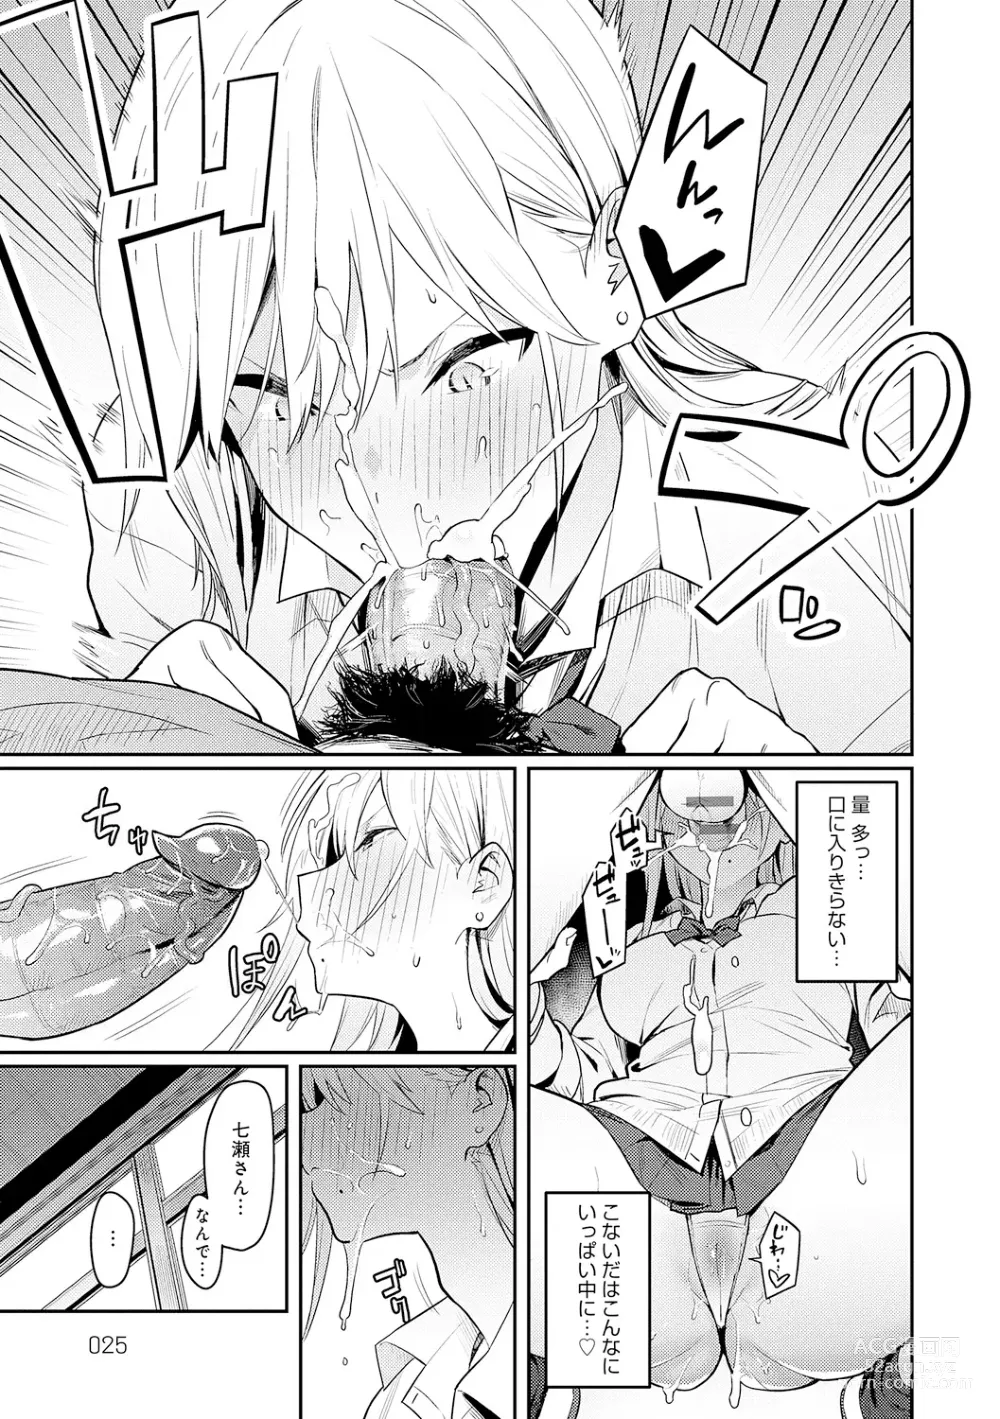 Page 25 of manga Seiyoku Tsuyo Tsuyo + Extra (decensored)